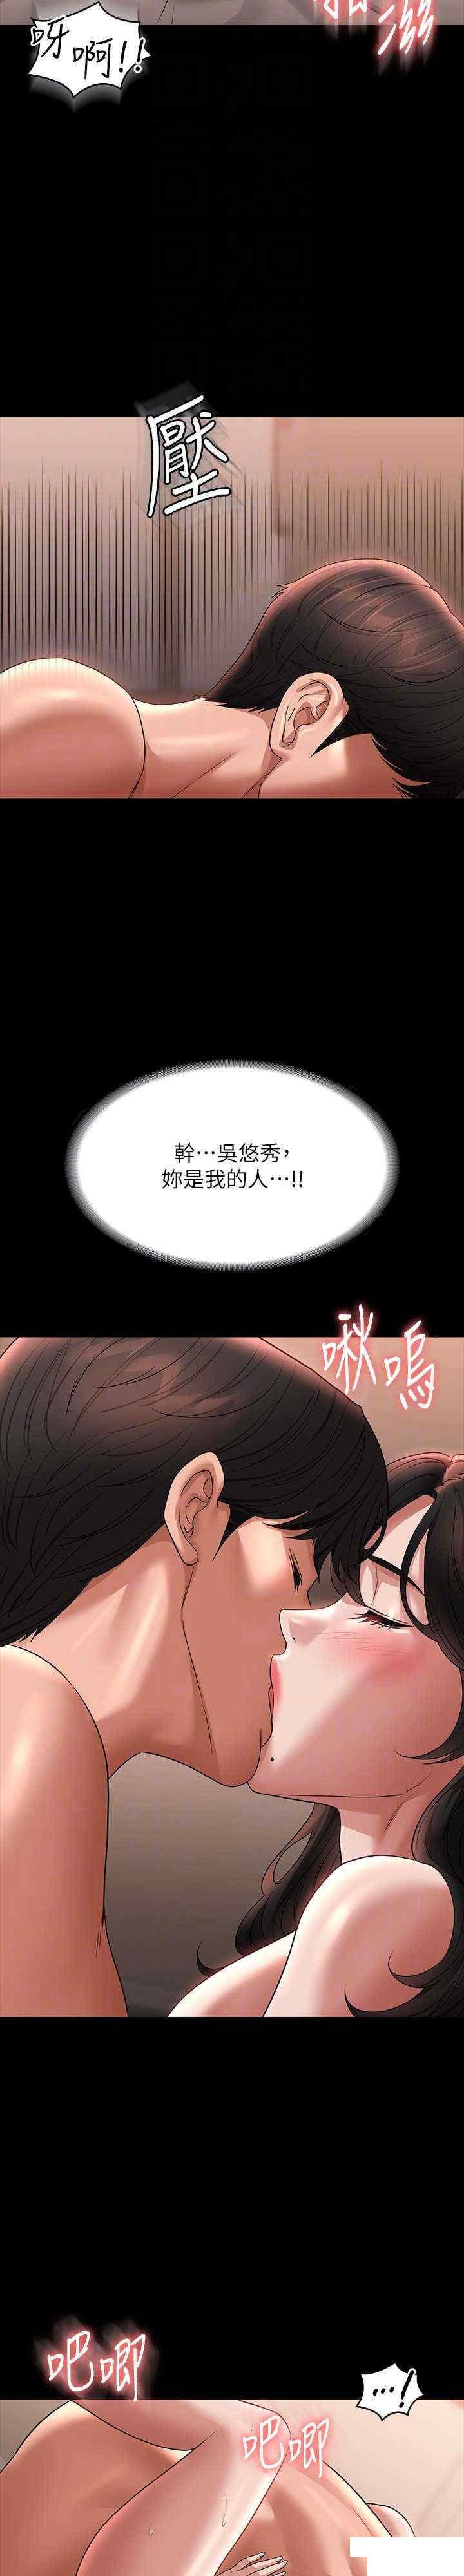 韩国污漫画 超級公務員 第94话 被狠狠抽插过的淫荡痕迹 17